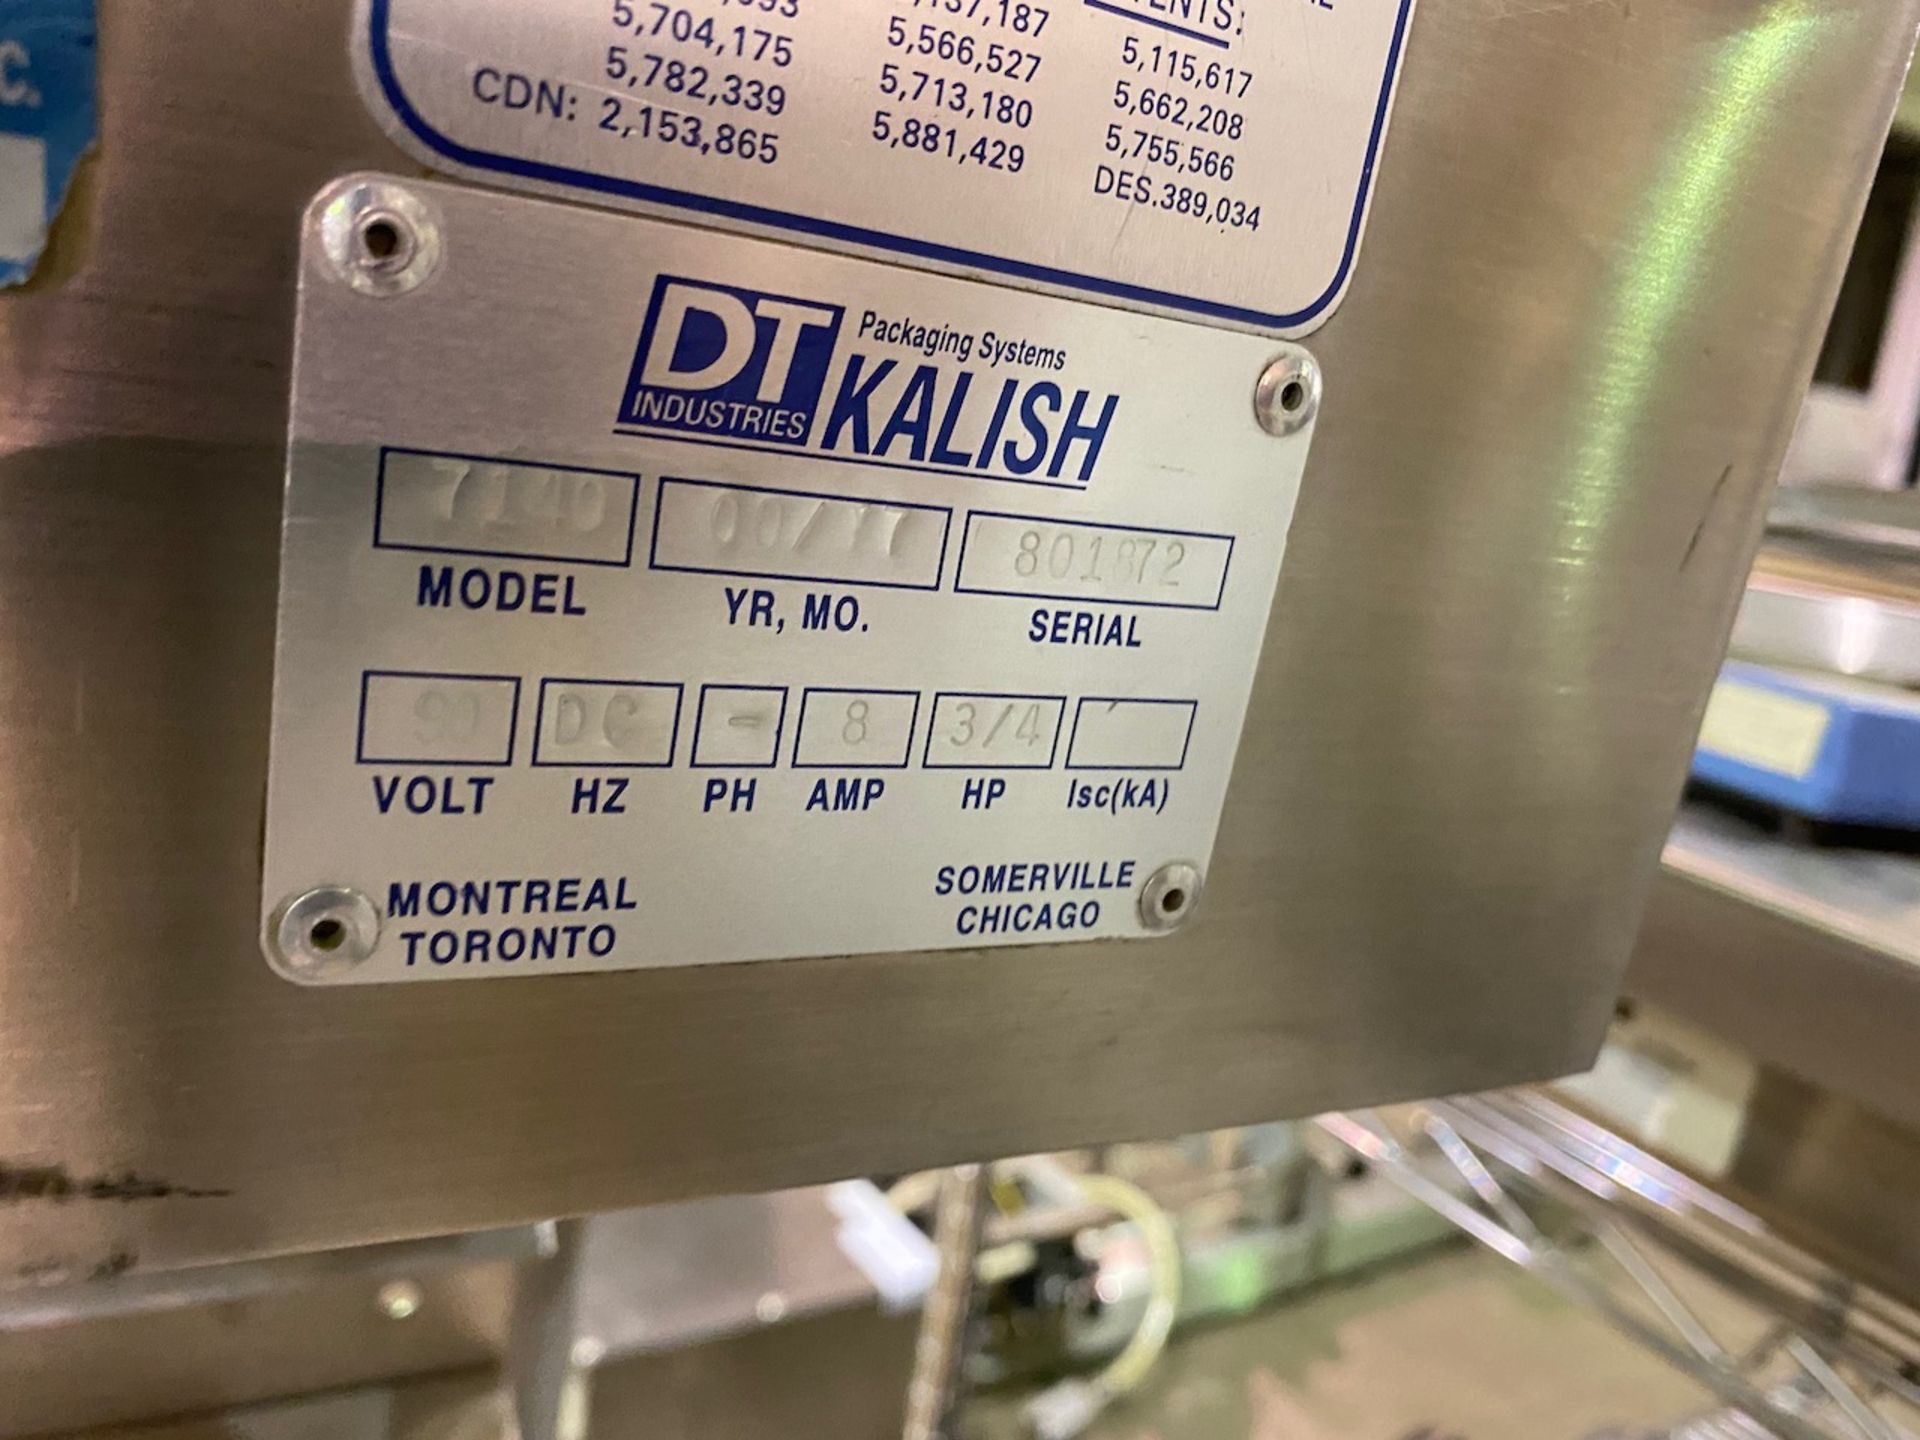 DT Industries Kalish PharmaVeyor Model 7140 14.4' x 4.5" Conveyor - Image 6 of 6